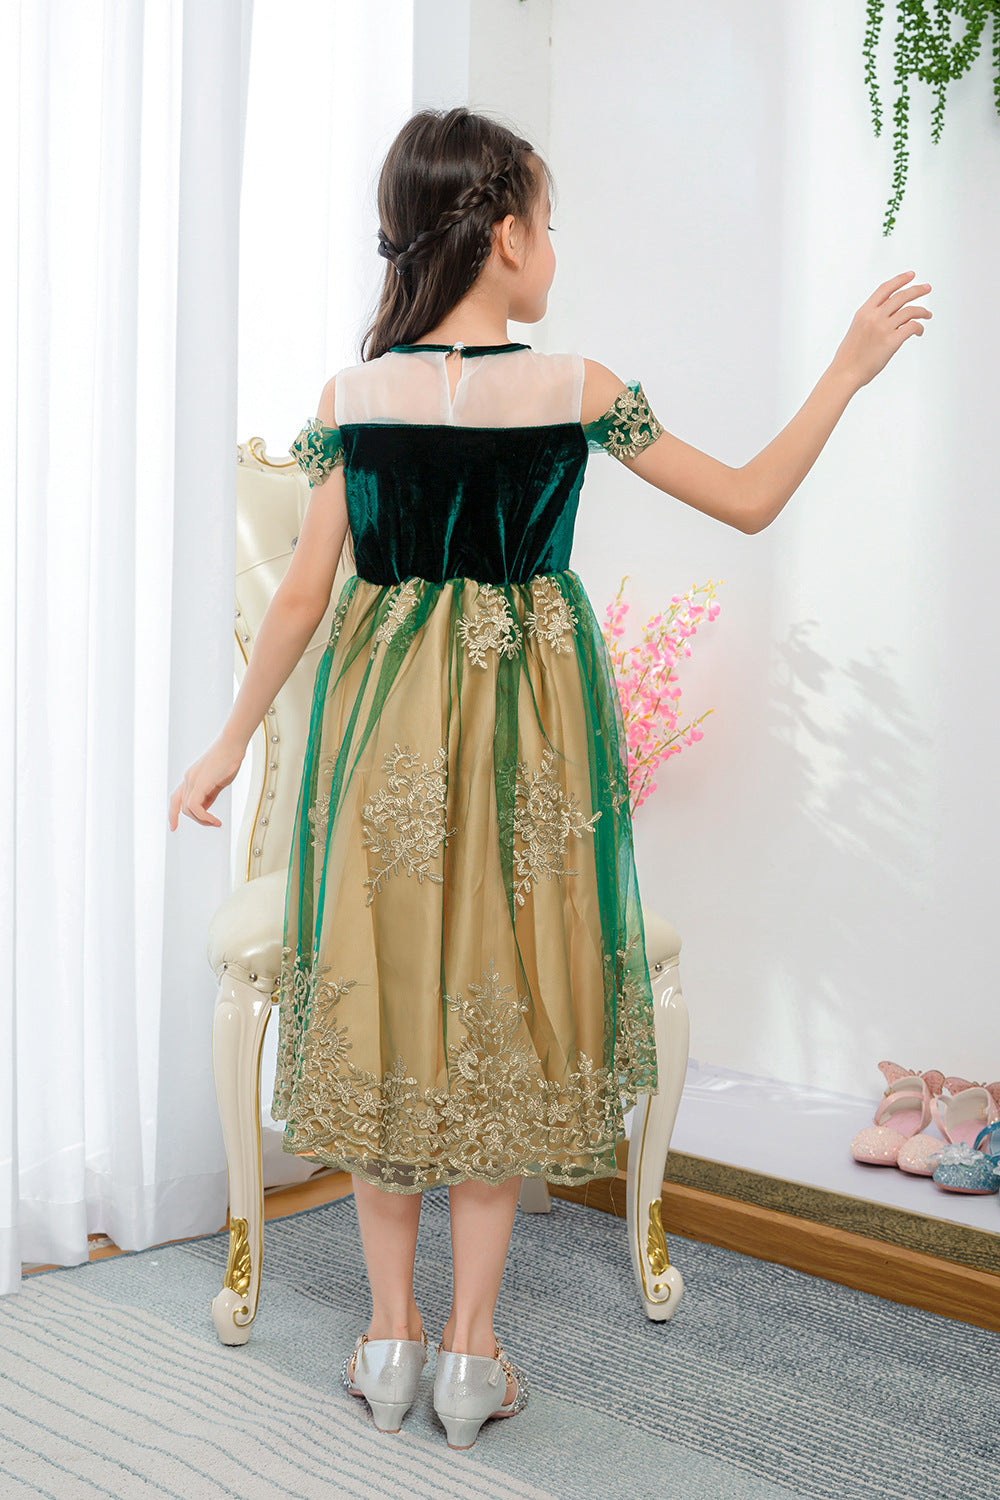 New Frozen Princess Anna Dress Strapless Dress Children's Dress Princess Dress Halloween Dress Show